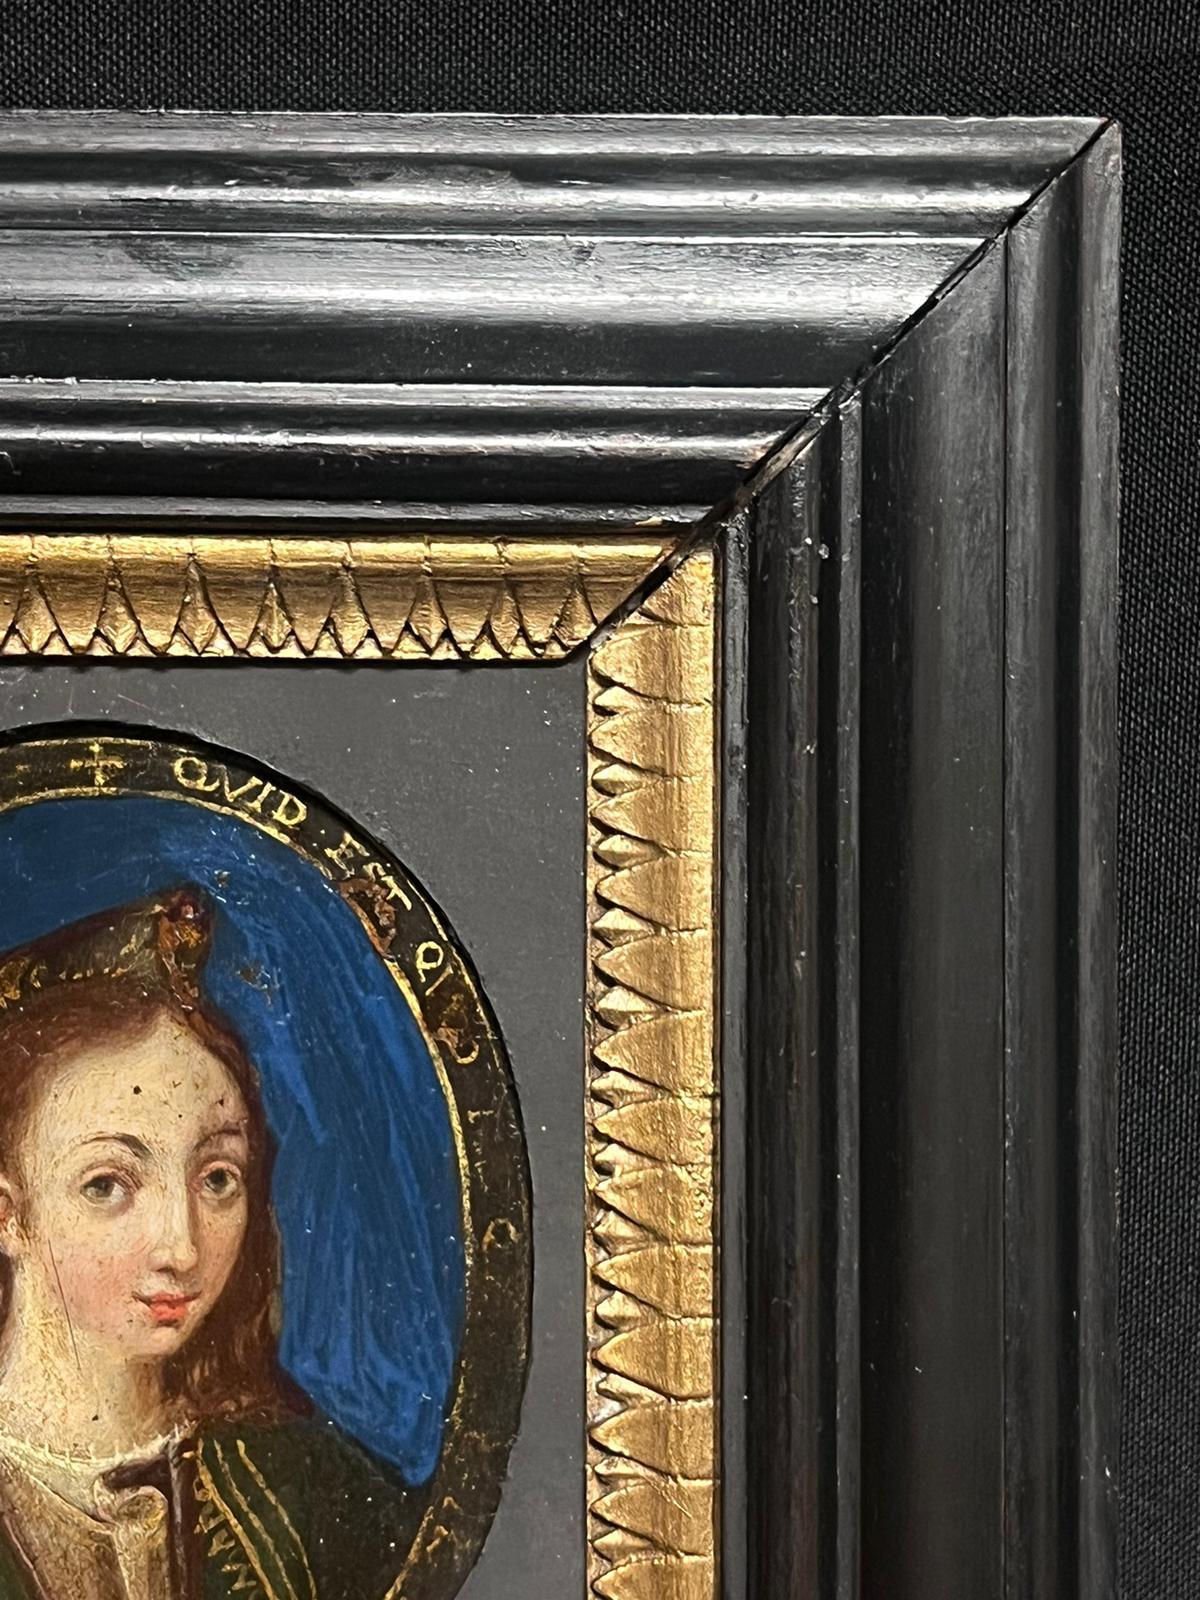 Ovales italienisches, altes Meisterporträt einer Dame auf Kupferholz Frm aus dem 17. Jahrhundert (Alte Meister), Painting, von 17th Century Italian Old Master